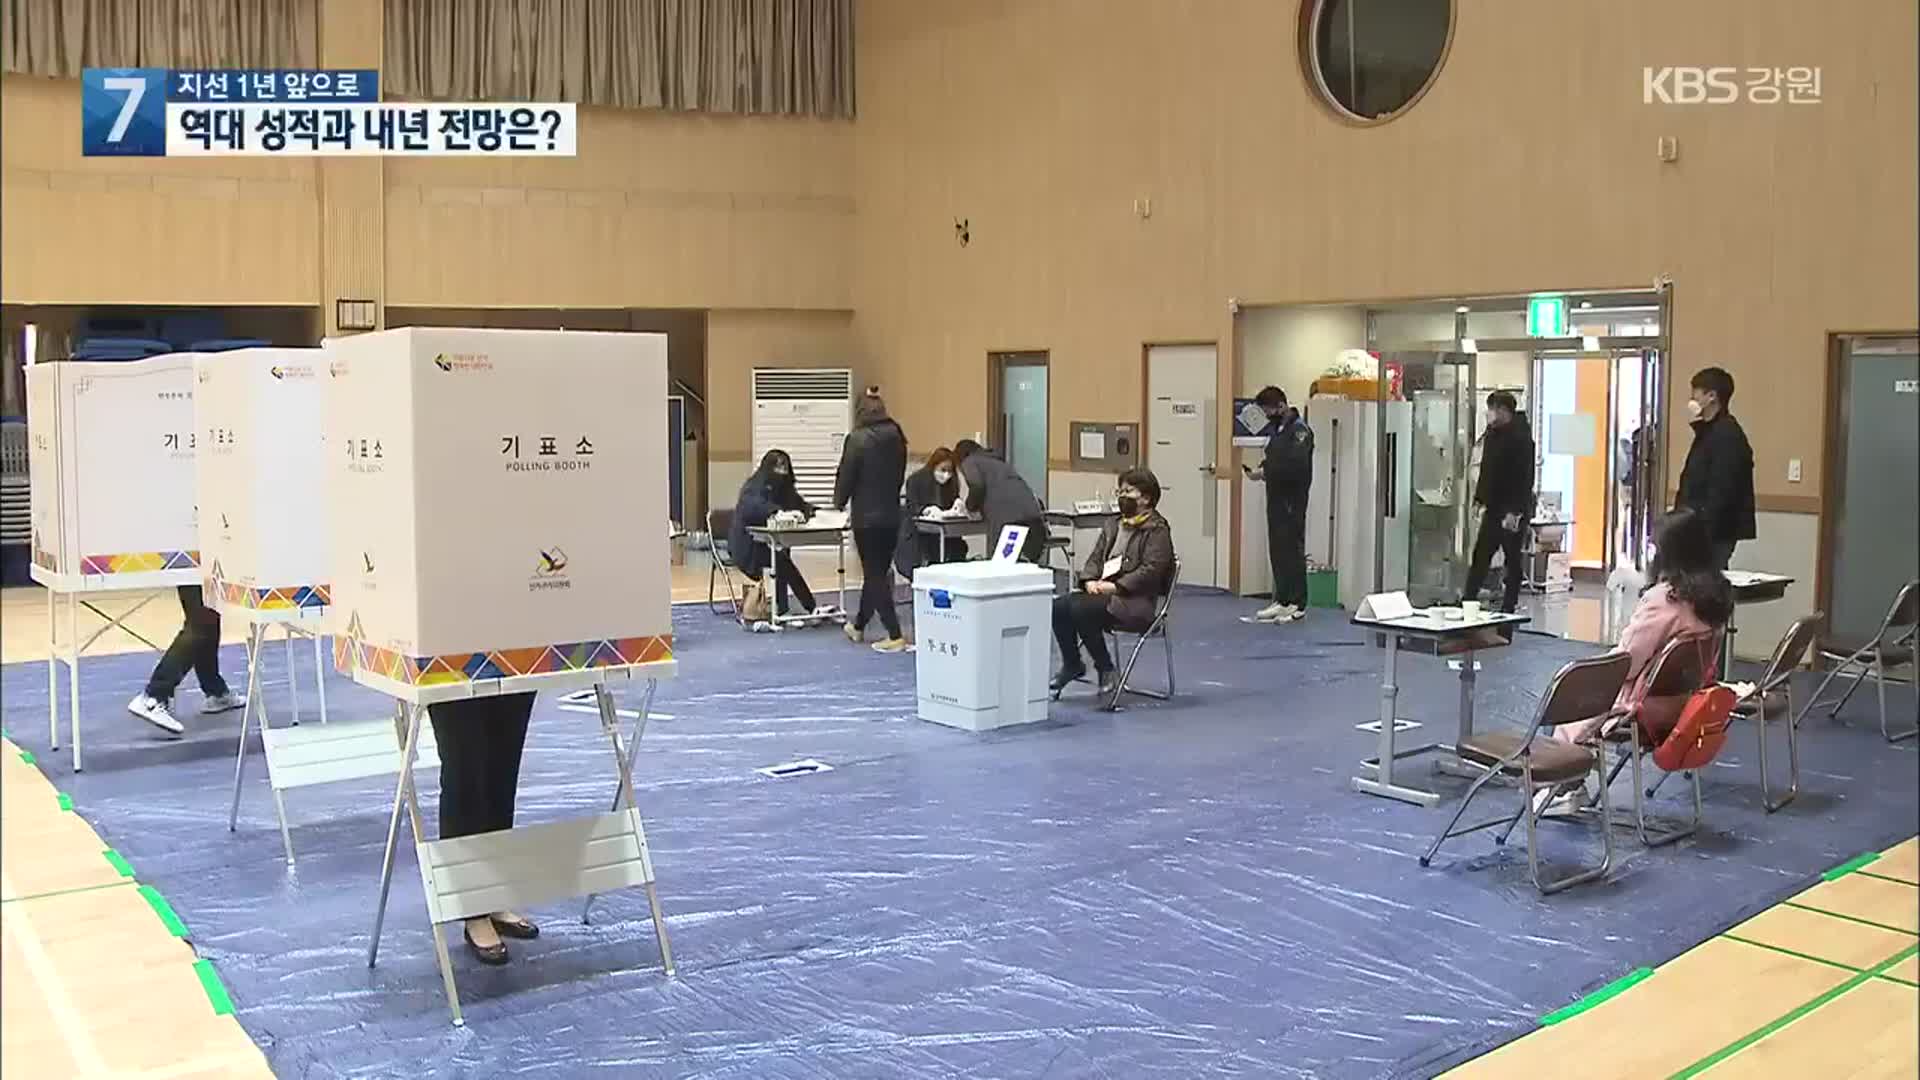 [지방선거]① 지방선거 1년 앞으로…역대 성적과 내년 전망은?